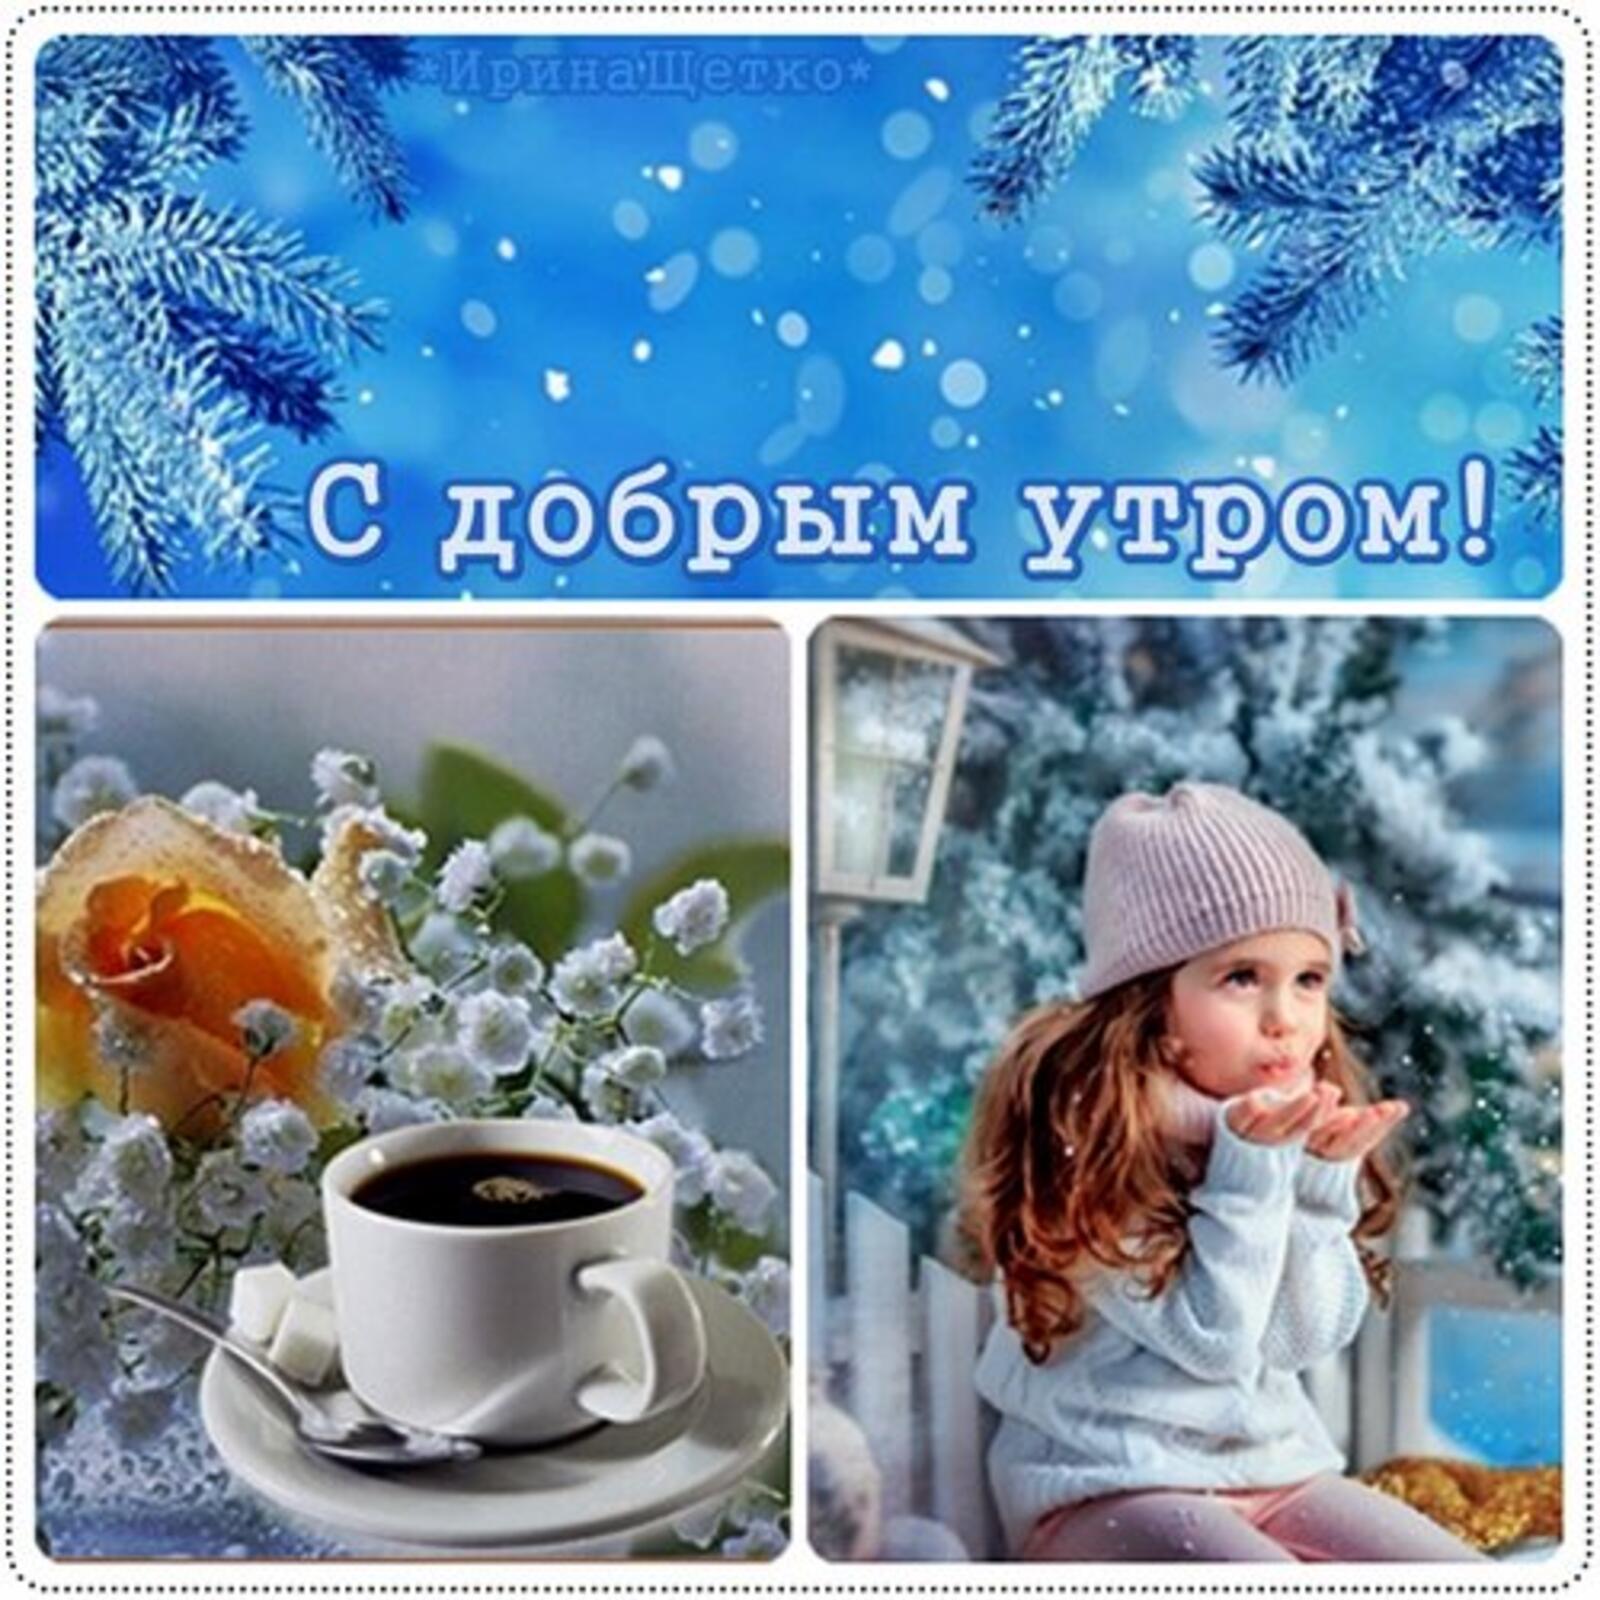 Доброе утро хорошего дня зимой картинки. Зимние поздравления с добрым утром. Открытка с добрым морозным утром и хорошим настроением. Открытки с добрым морозным утром. Пожелания с добрым утром зима.